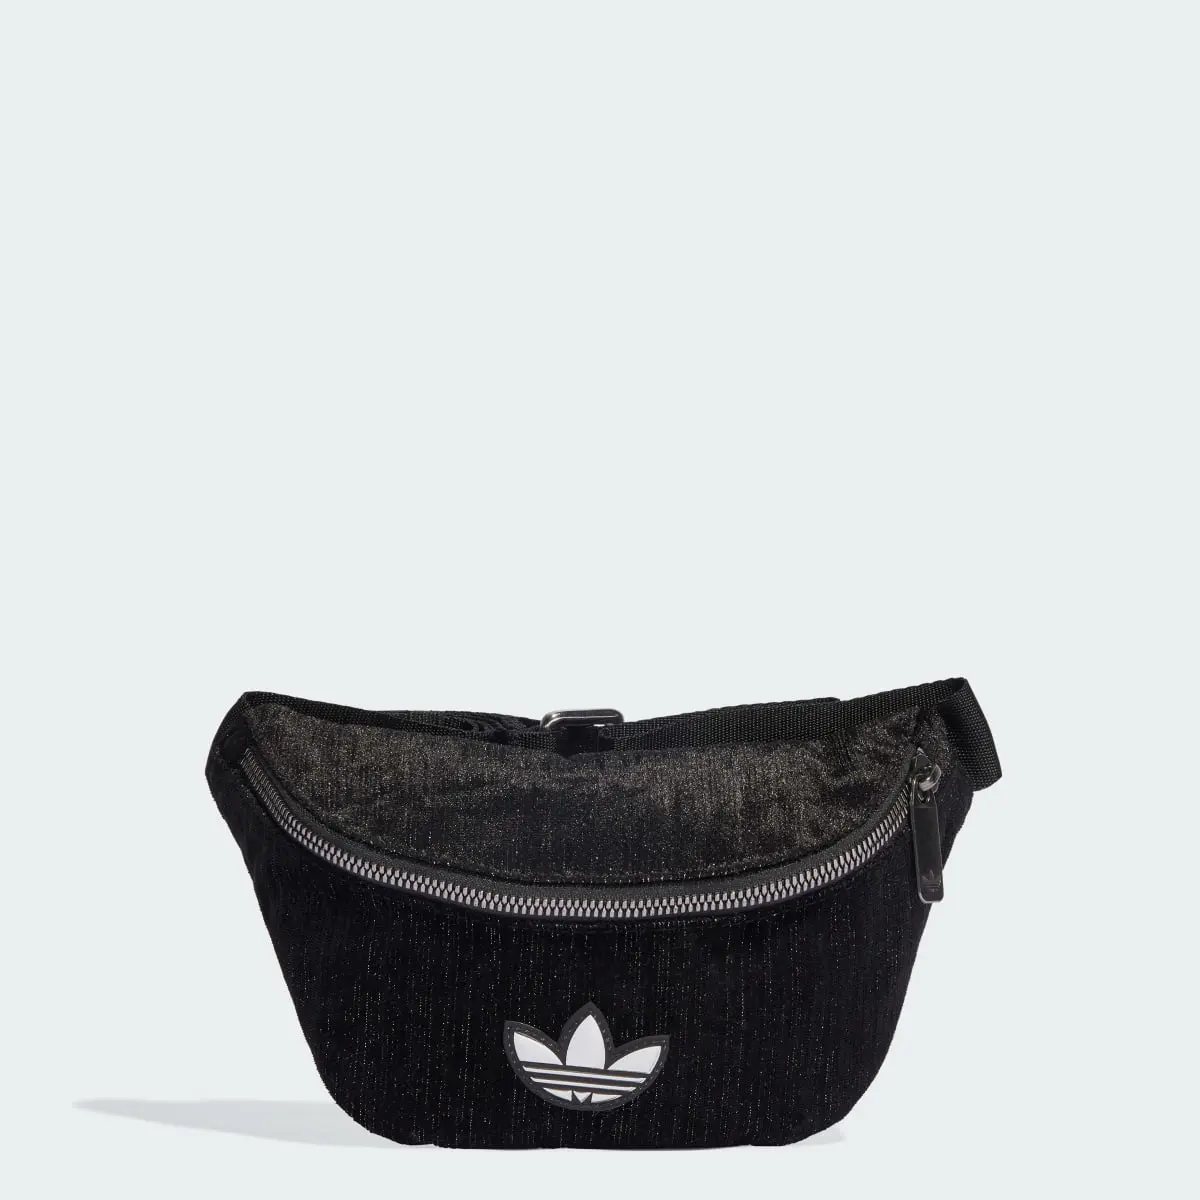 Adidas Glam Goth Waist Bag. 1